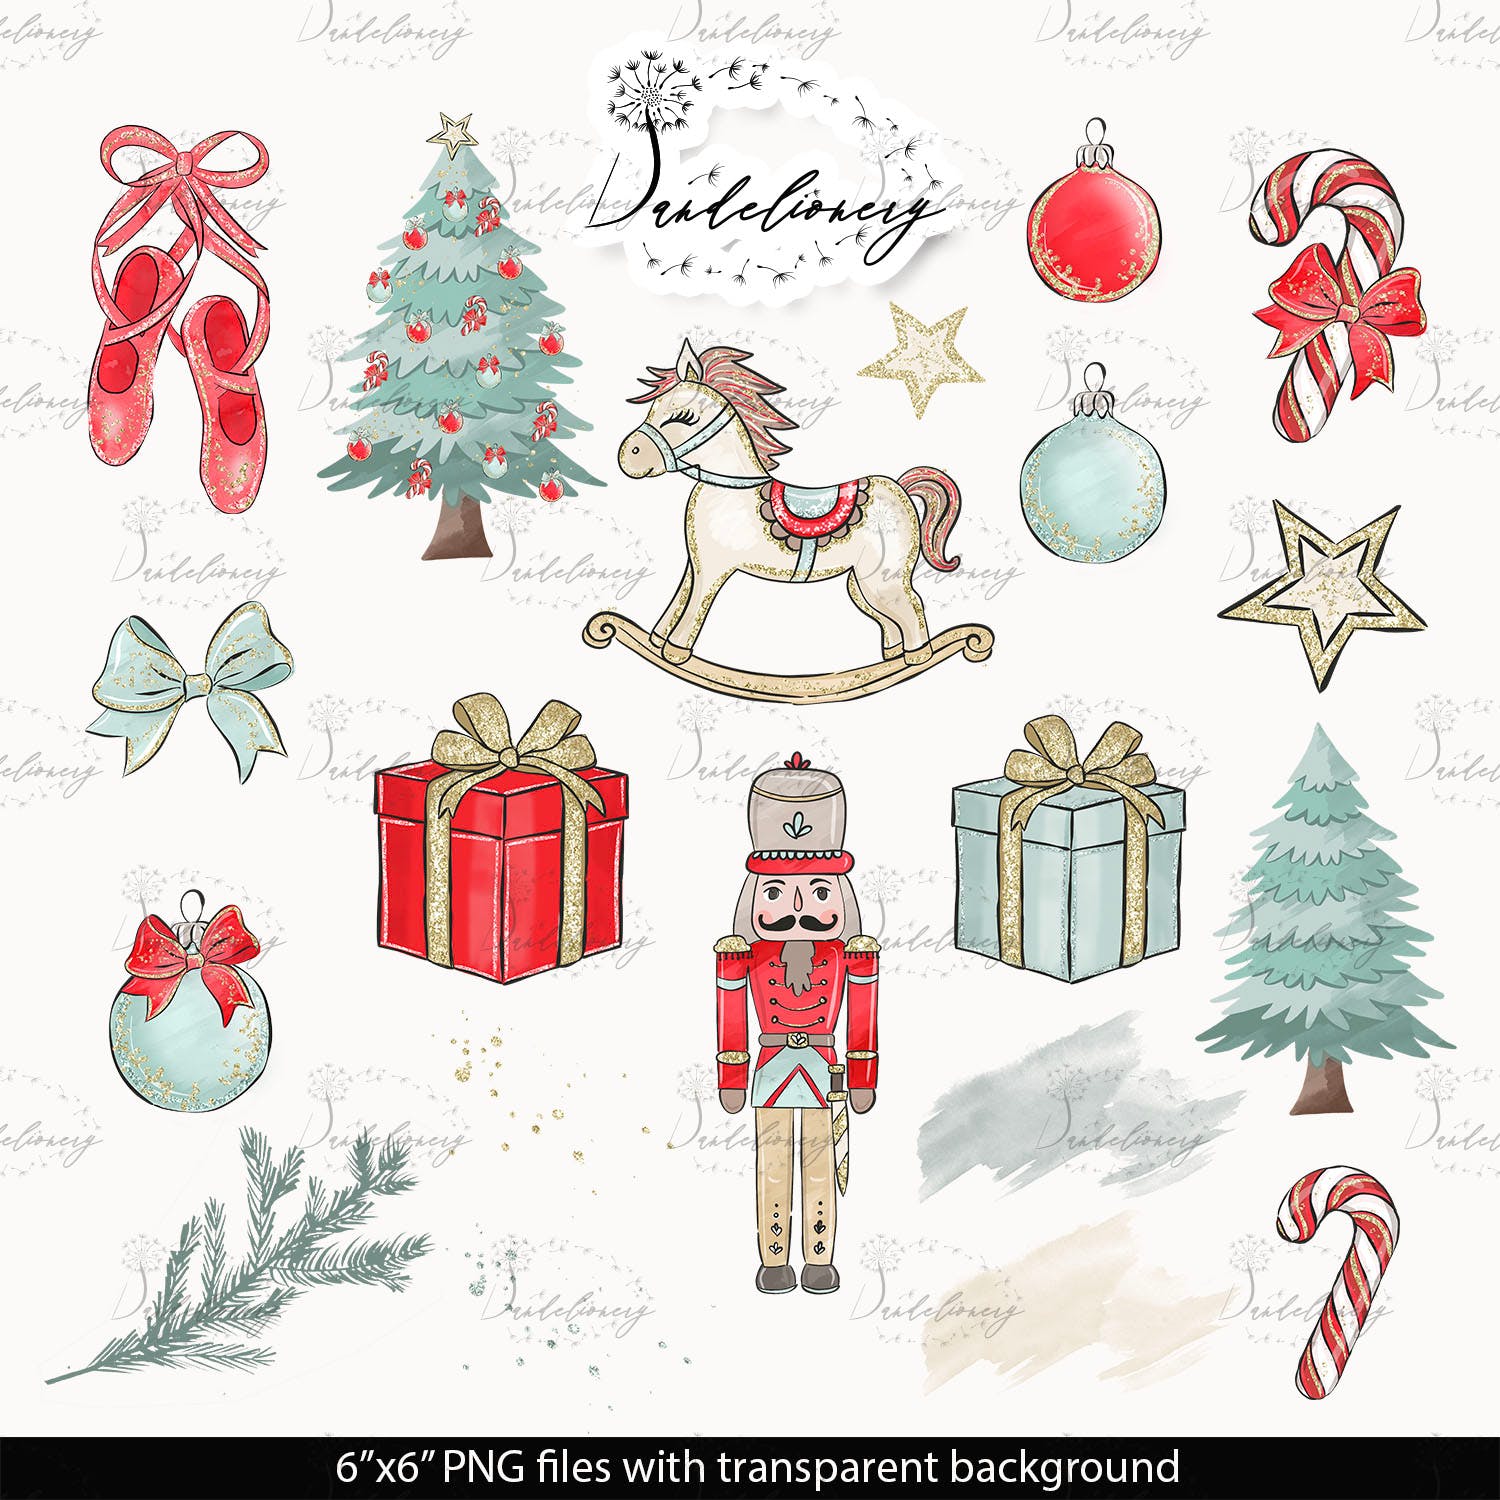 圣诞节胡桃夹子矢量手绘设计素材 Christmas Nutcracker design插图(3)